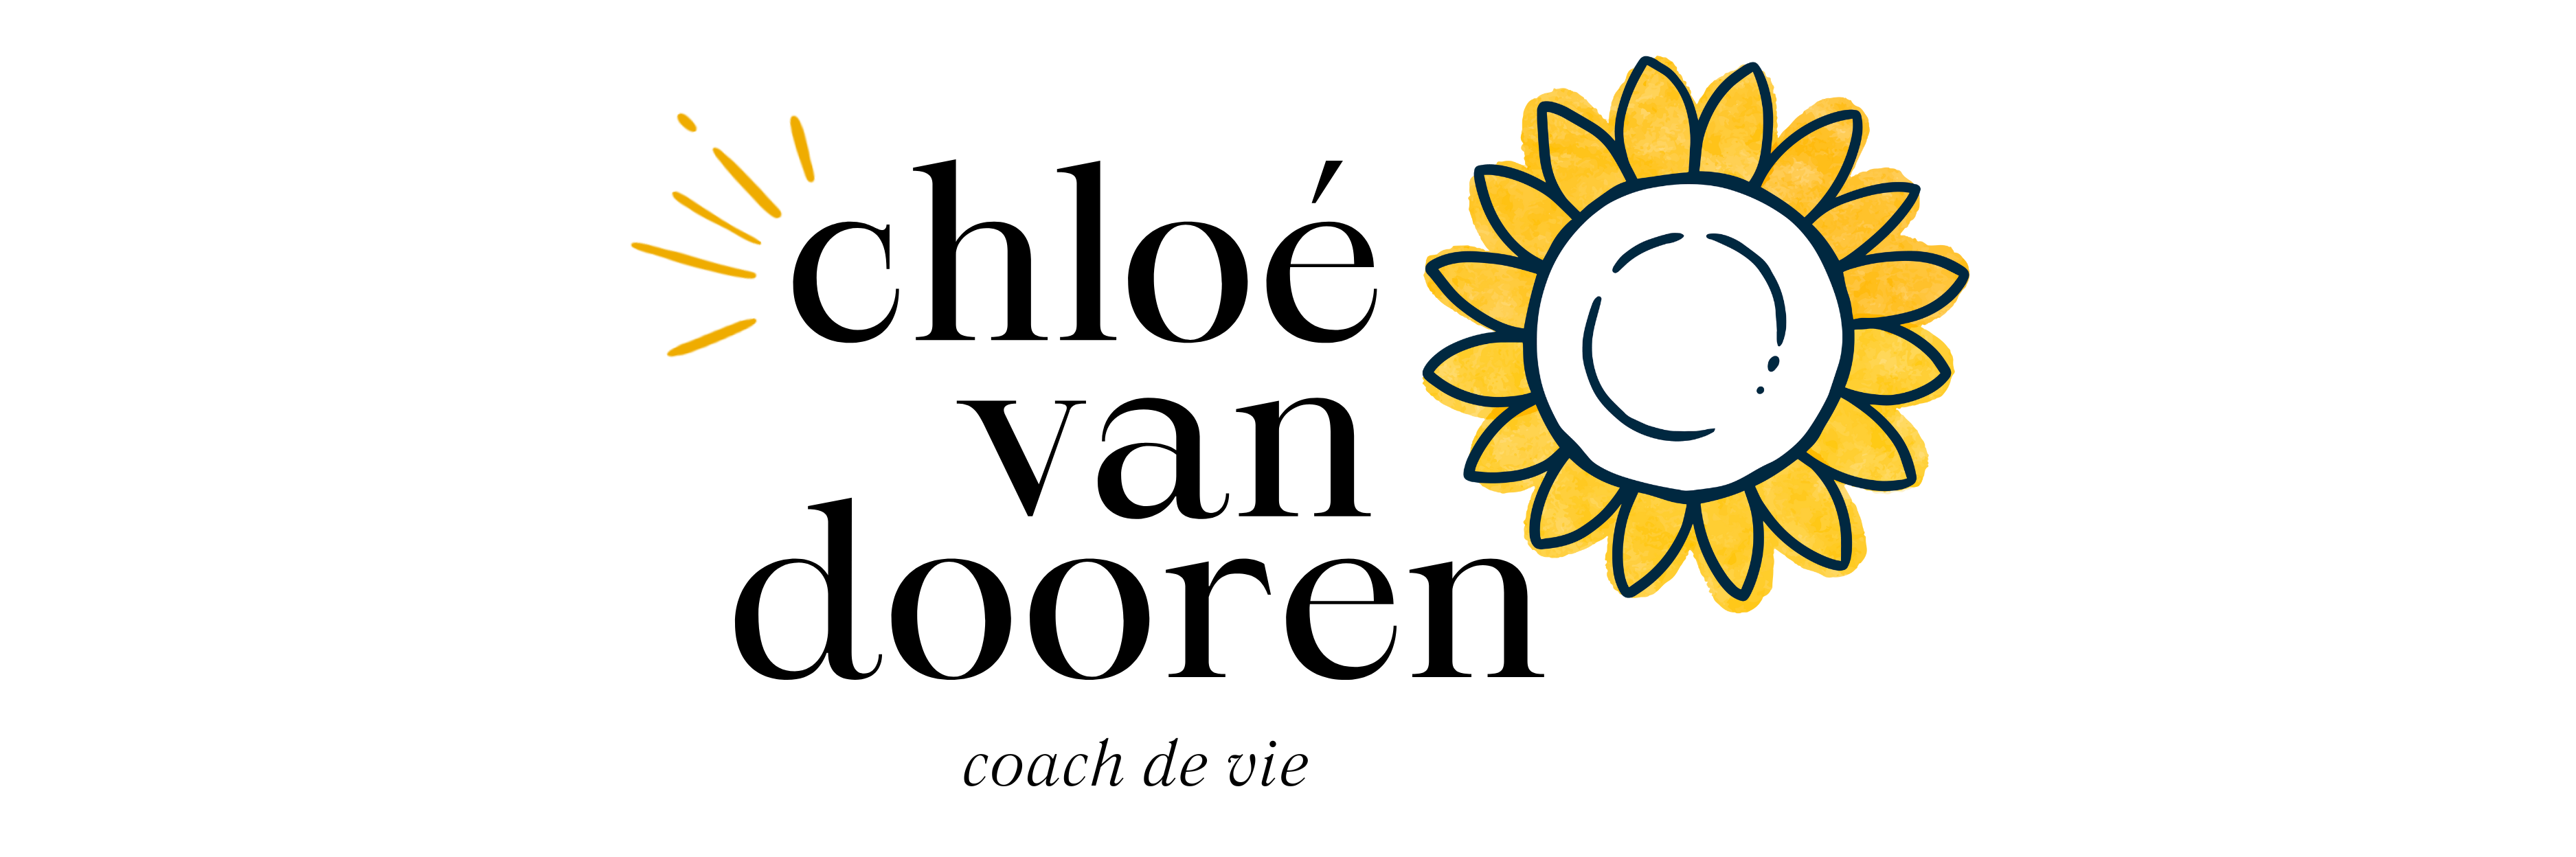 Chloé Van Dooren